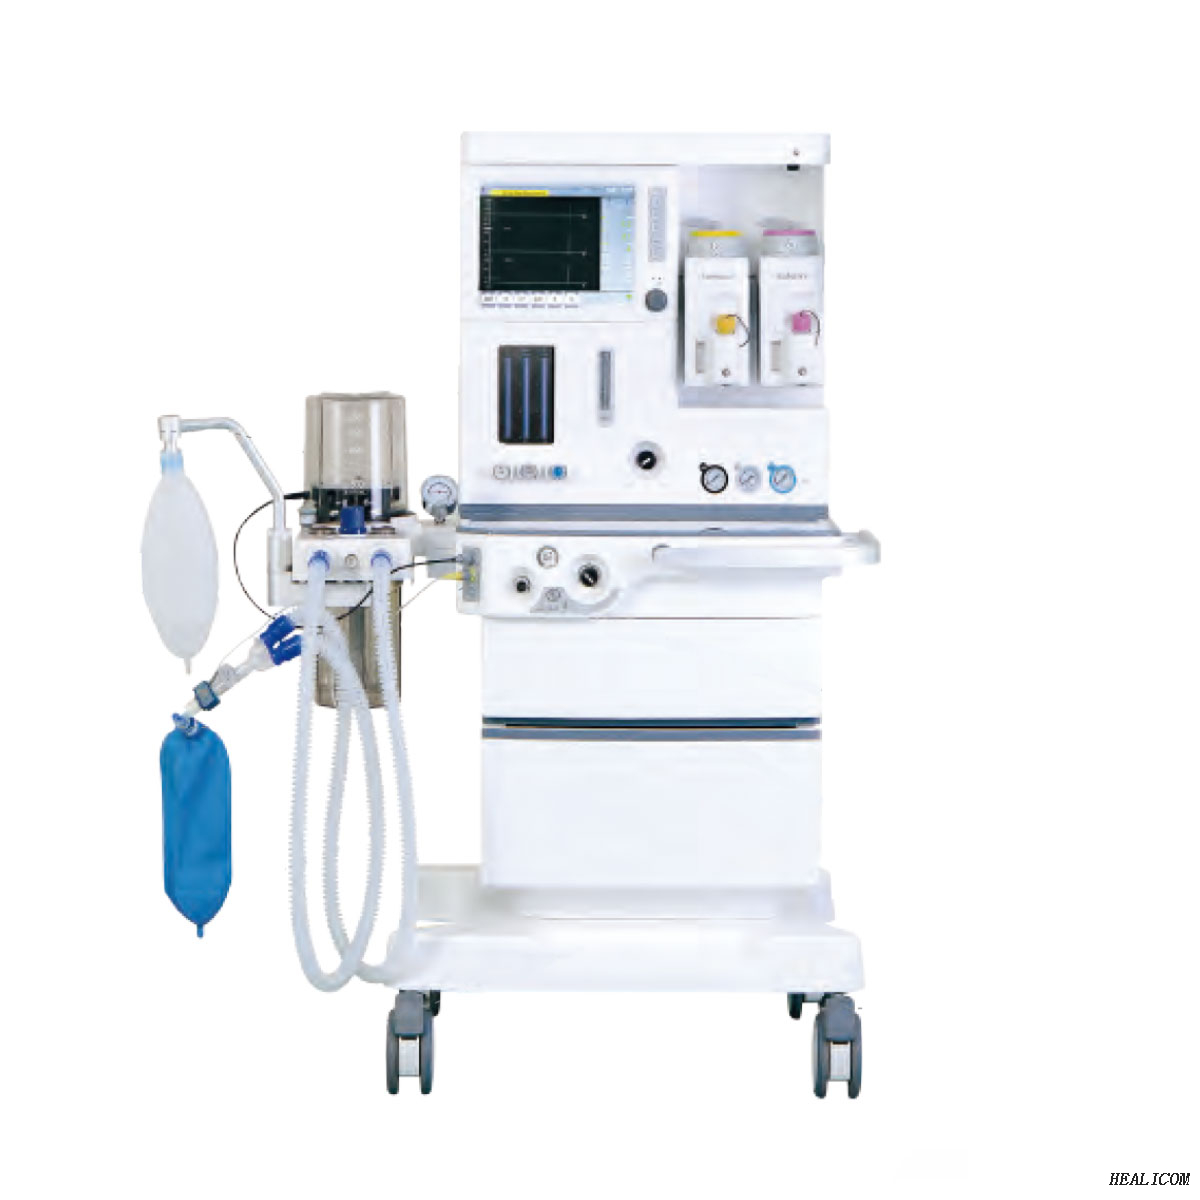 Venta caliente Healicom HA-6100 Plus Anesthesia Machine Systems Equipo de anestesia para pacientes